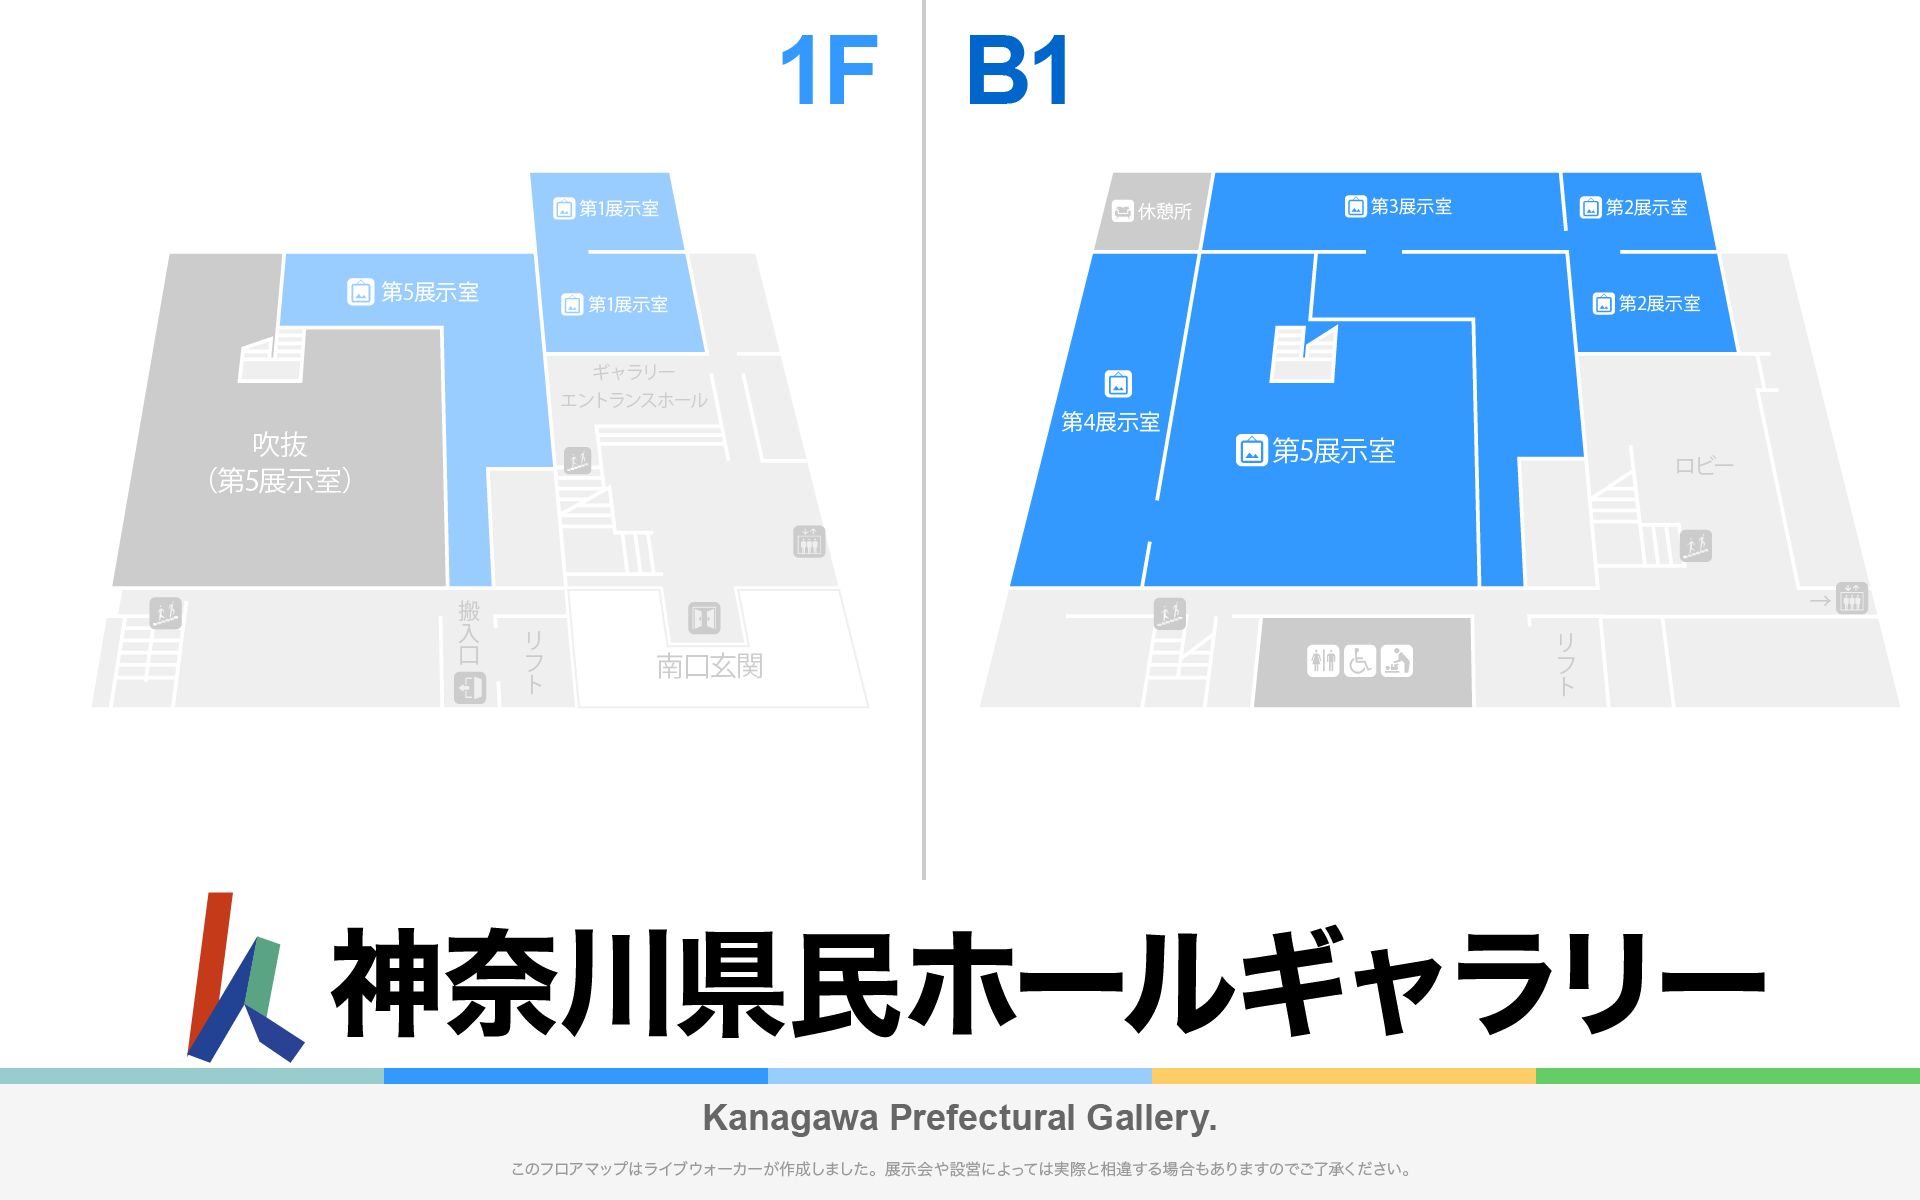 神奈川県民ホールギャラリーのフロアマップ